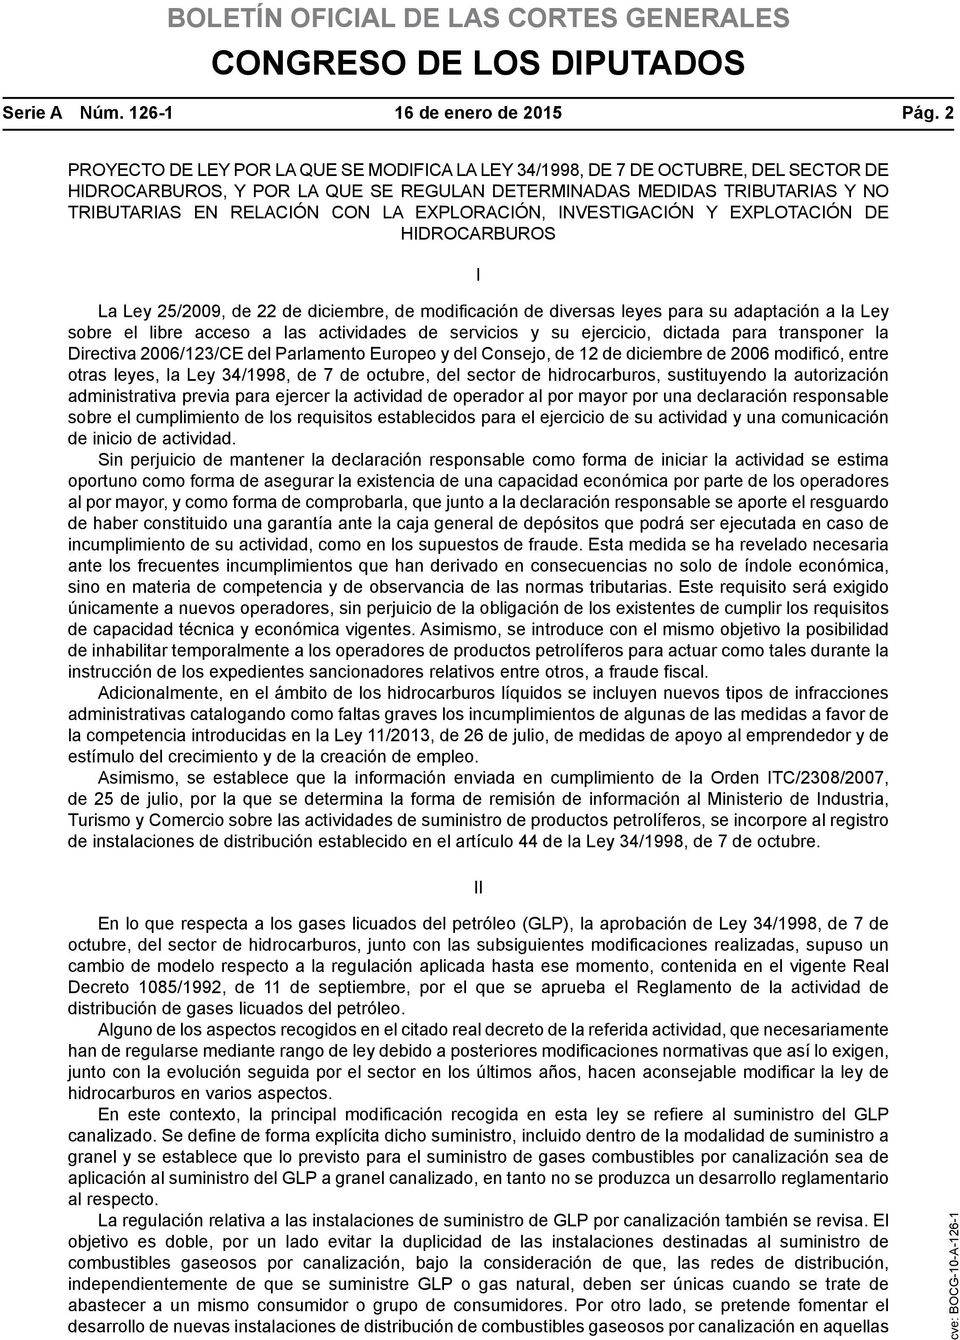 EXPLORACIÓN, INVESTIGACIÓN Y EXPLOTACIÓN DE HIDROCARBUROS I La Ley 25/2009, de 22 de diciembre, de modificación de diversas leyes para su adaptación a la Ley sobre el libre acceso a las actividades